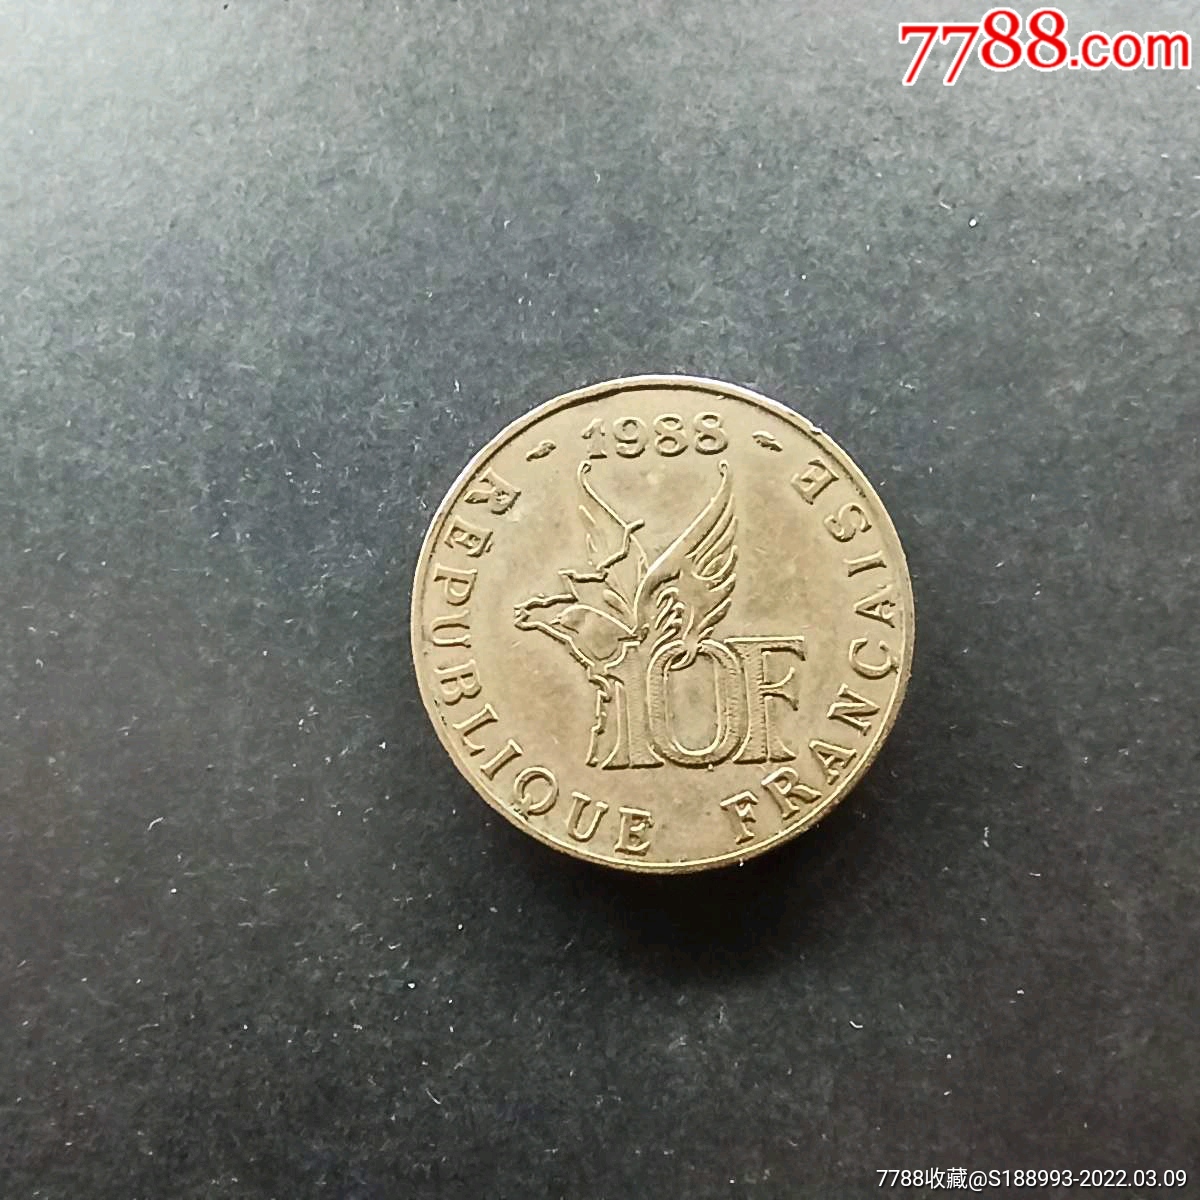 法国两欧元硬币 库存照片. 图片 包括有 金属, 硬币, 现金, 欧洲, 预算值, 销售额, 经济, 投资 - 105072050